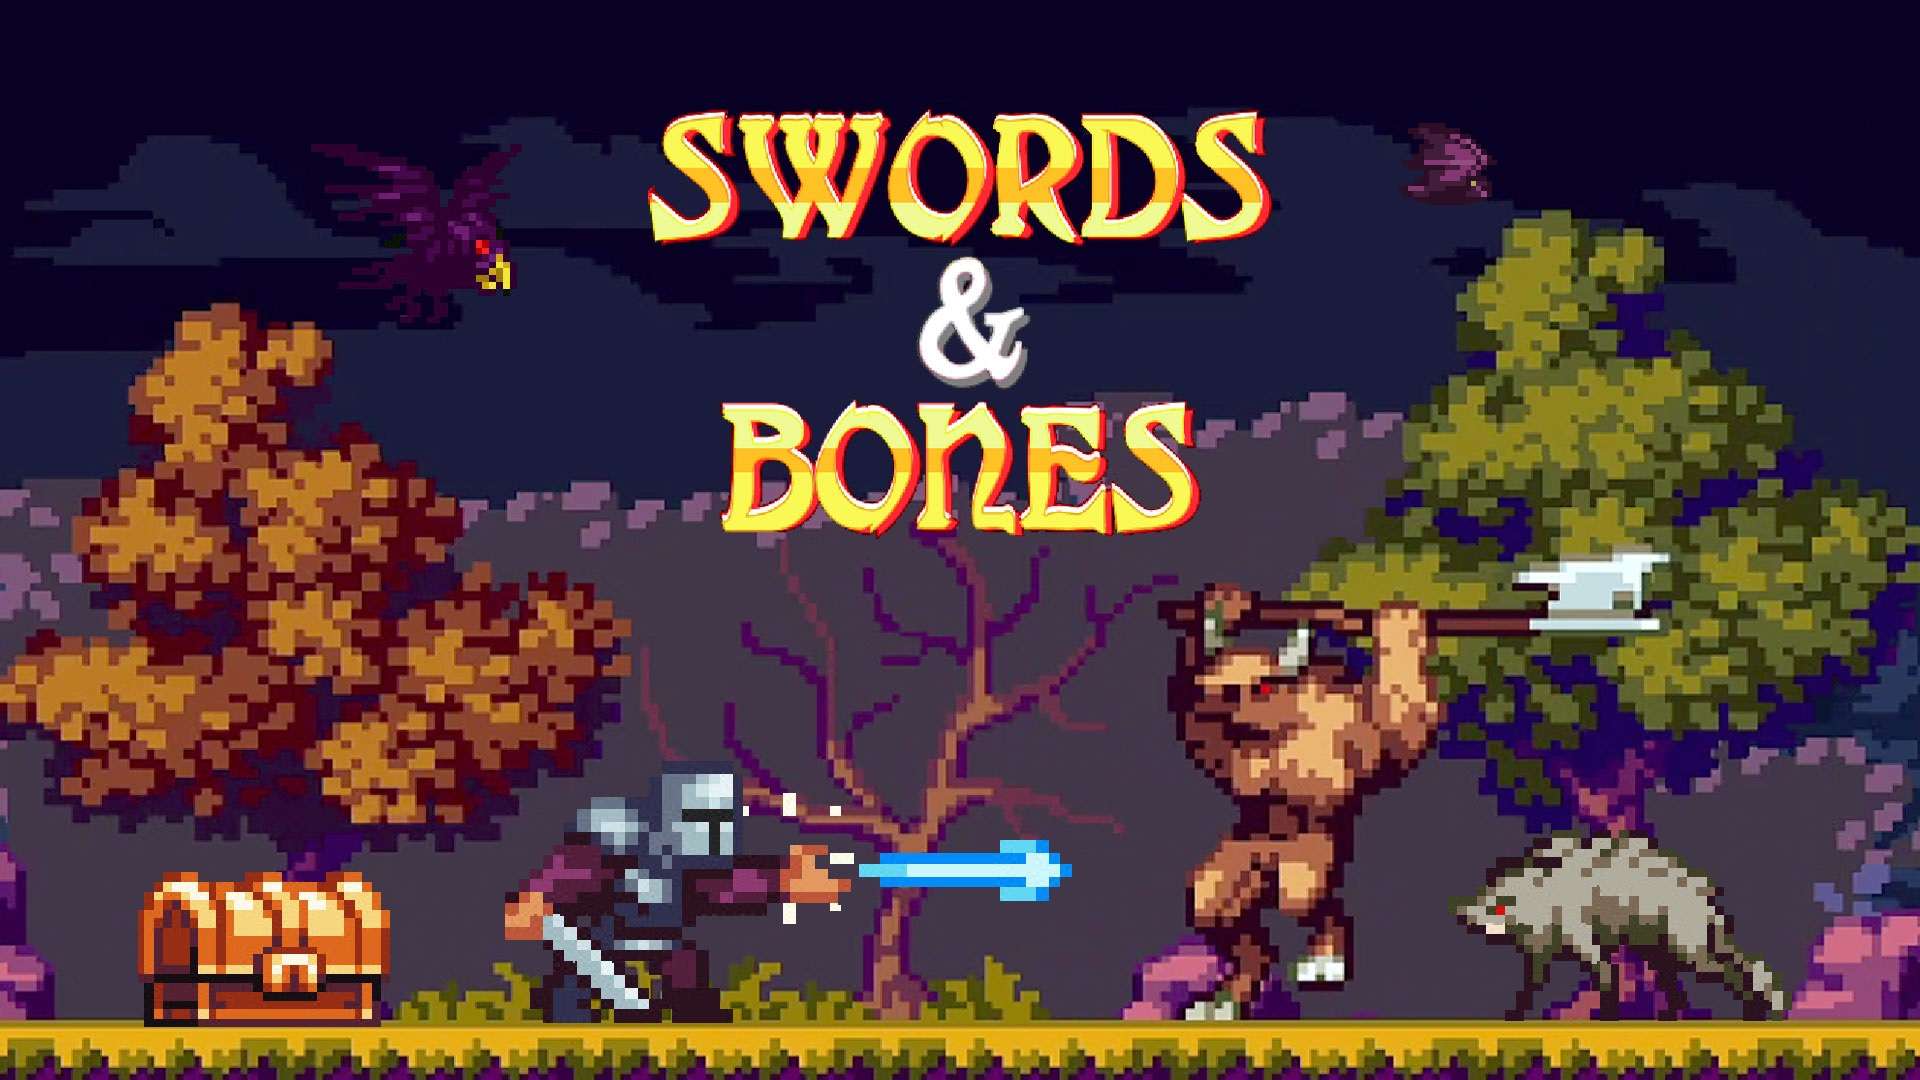 Swords and Bones